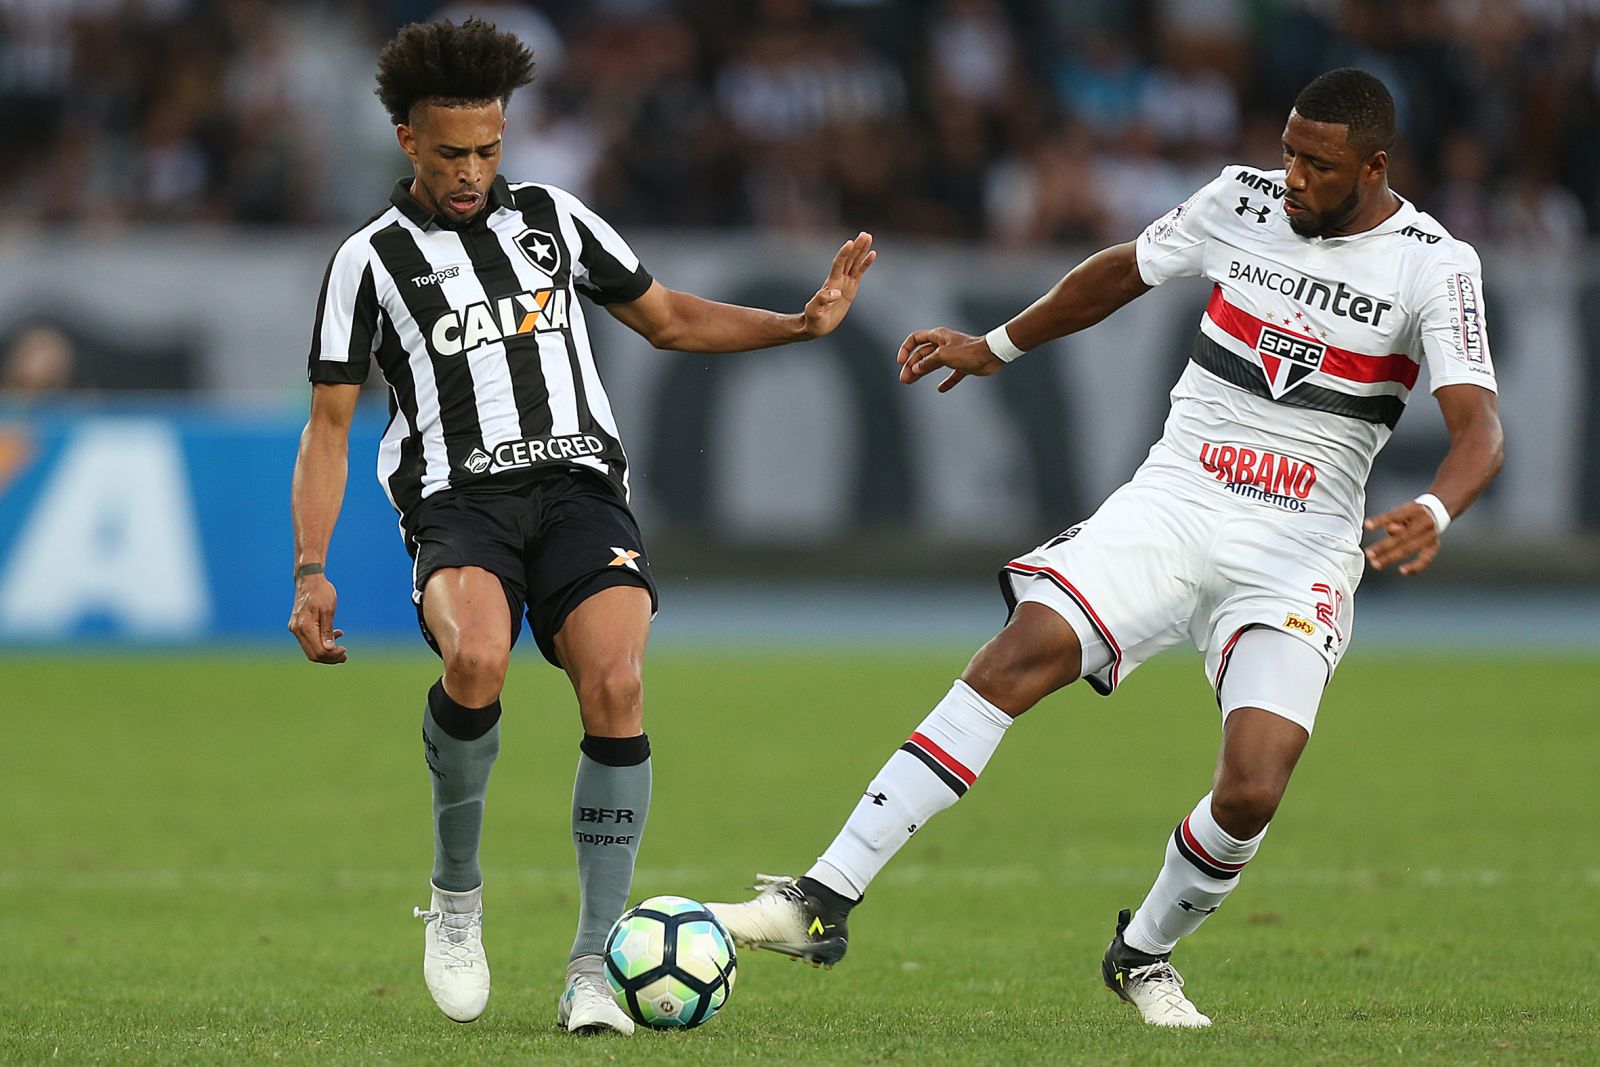 Sao Paulo vs Botafogo, 7h30 ngày 10/12: Củng cố ngôi đầu